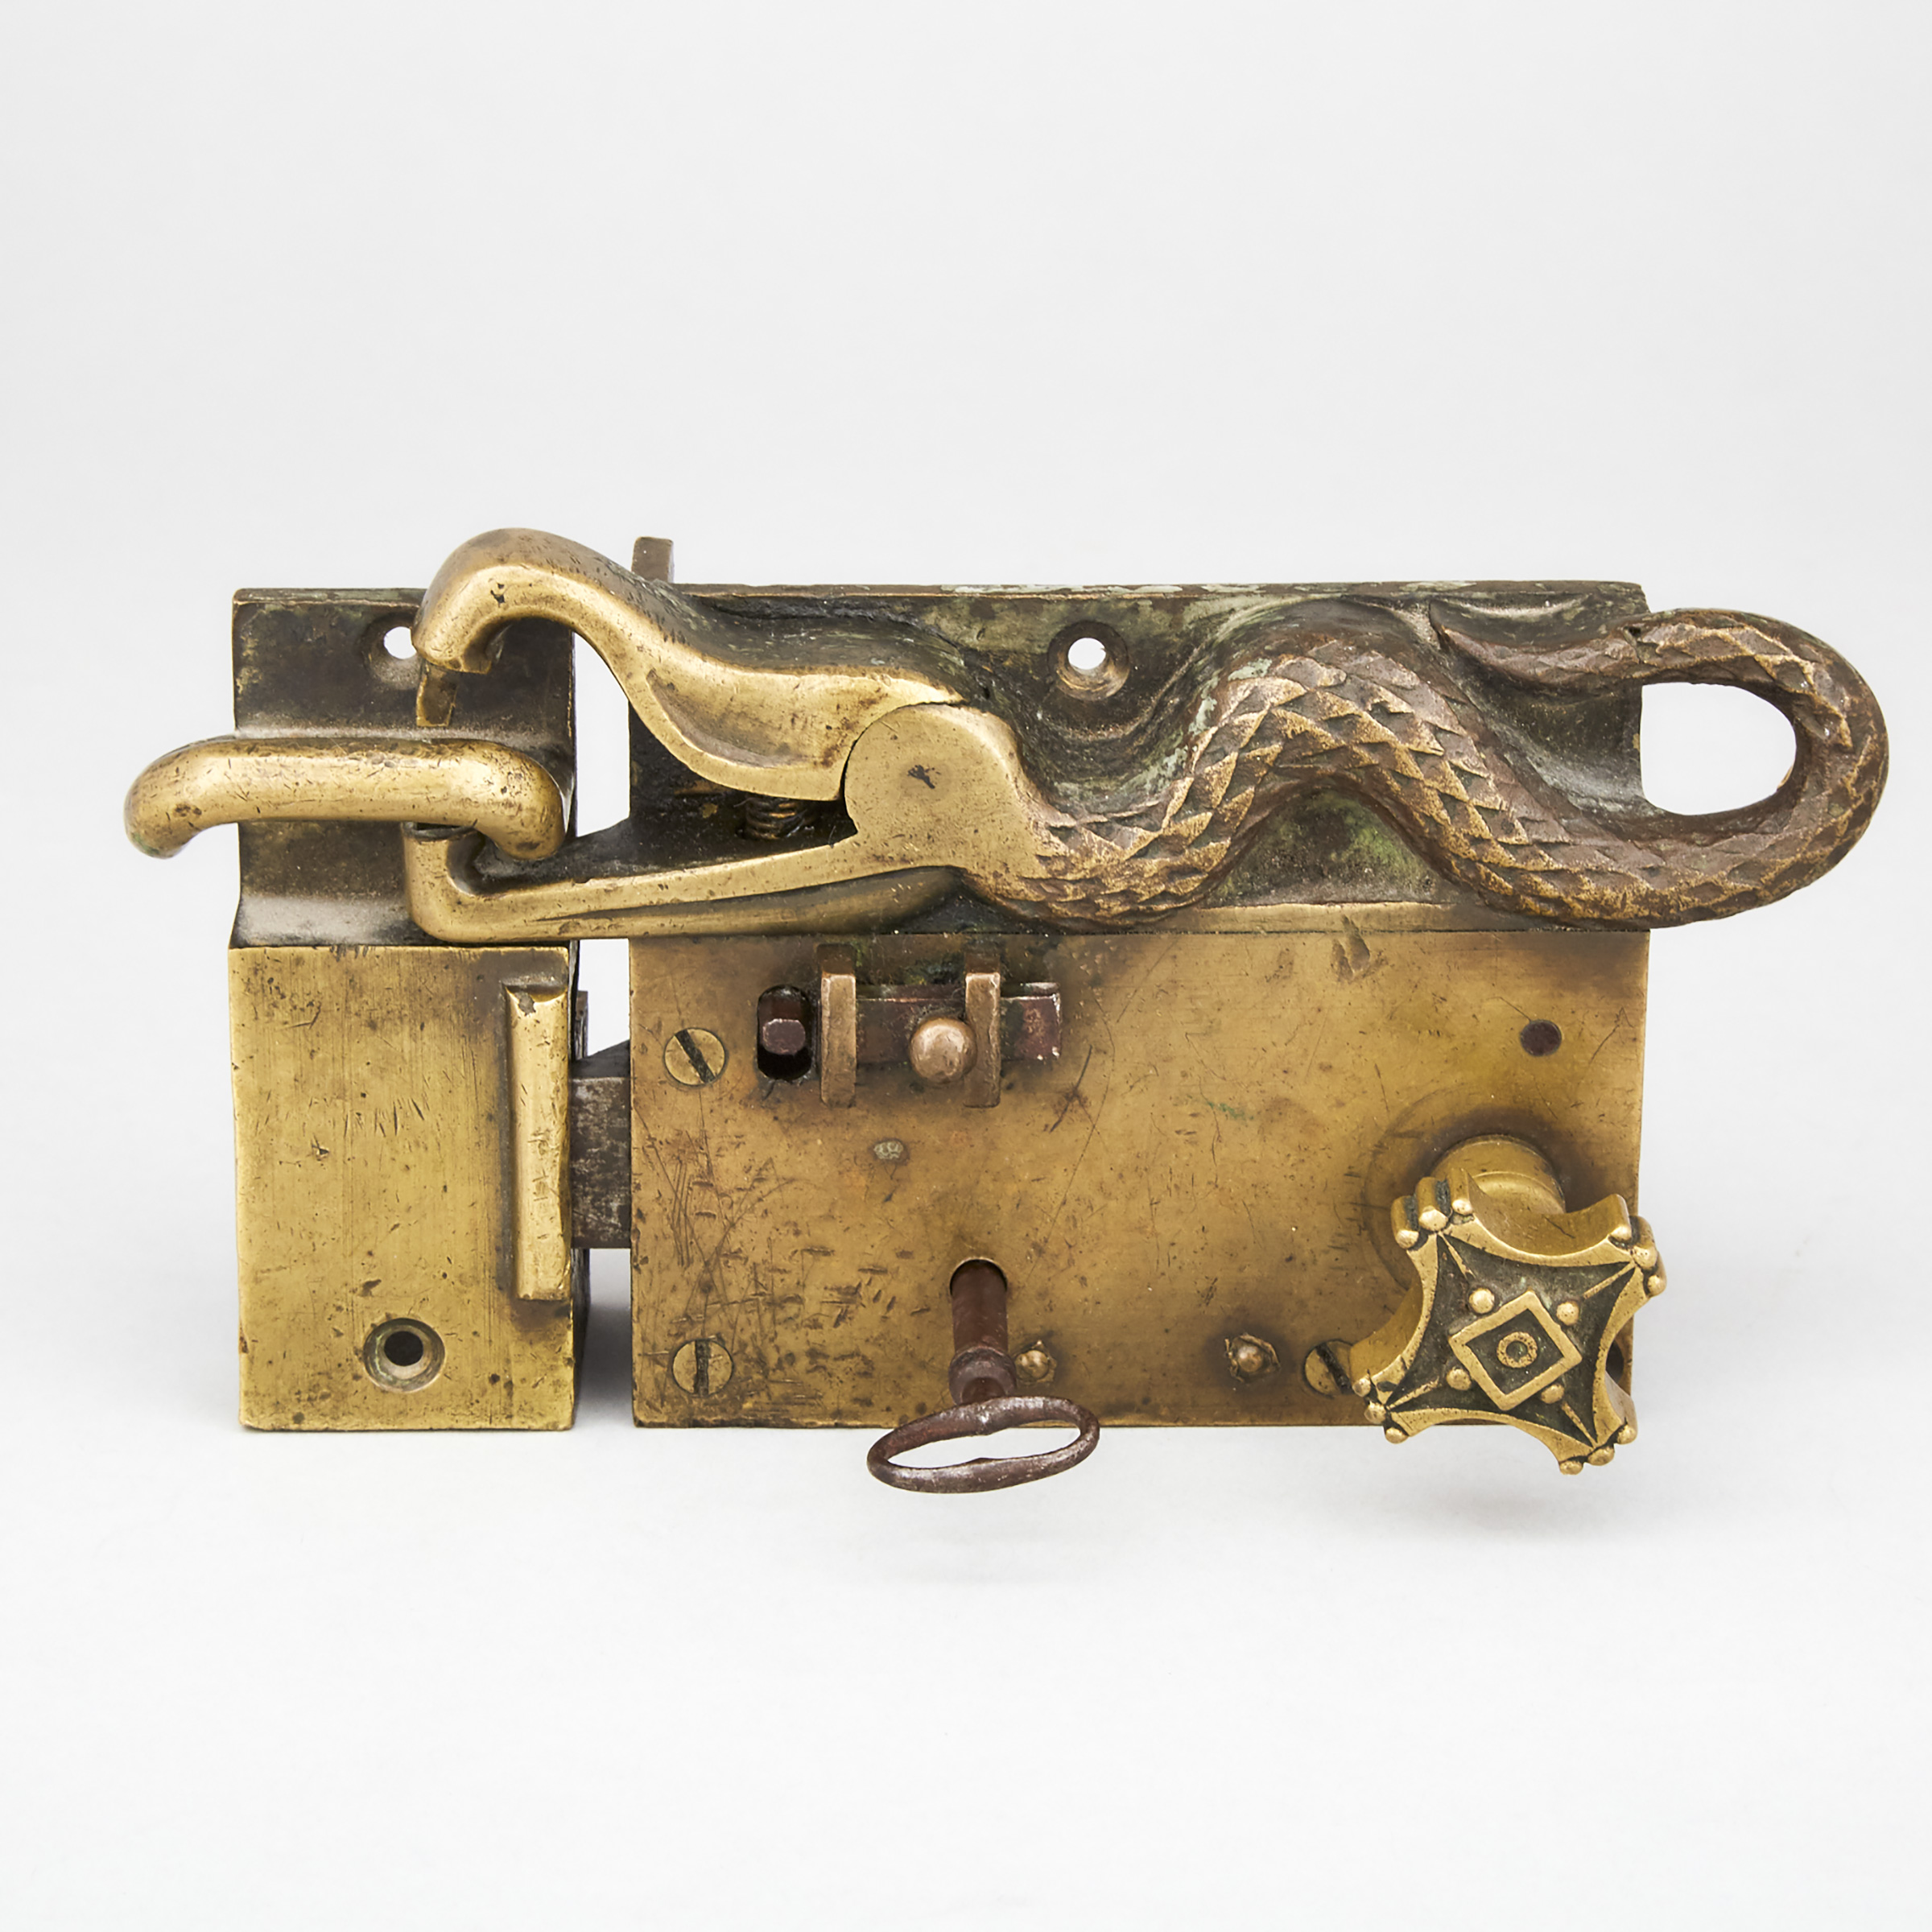 Serpent Form Brass Door Lockset, 18th century or earlier